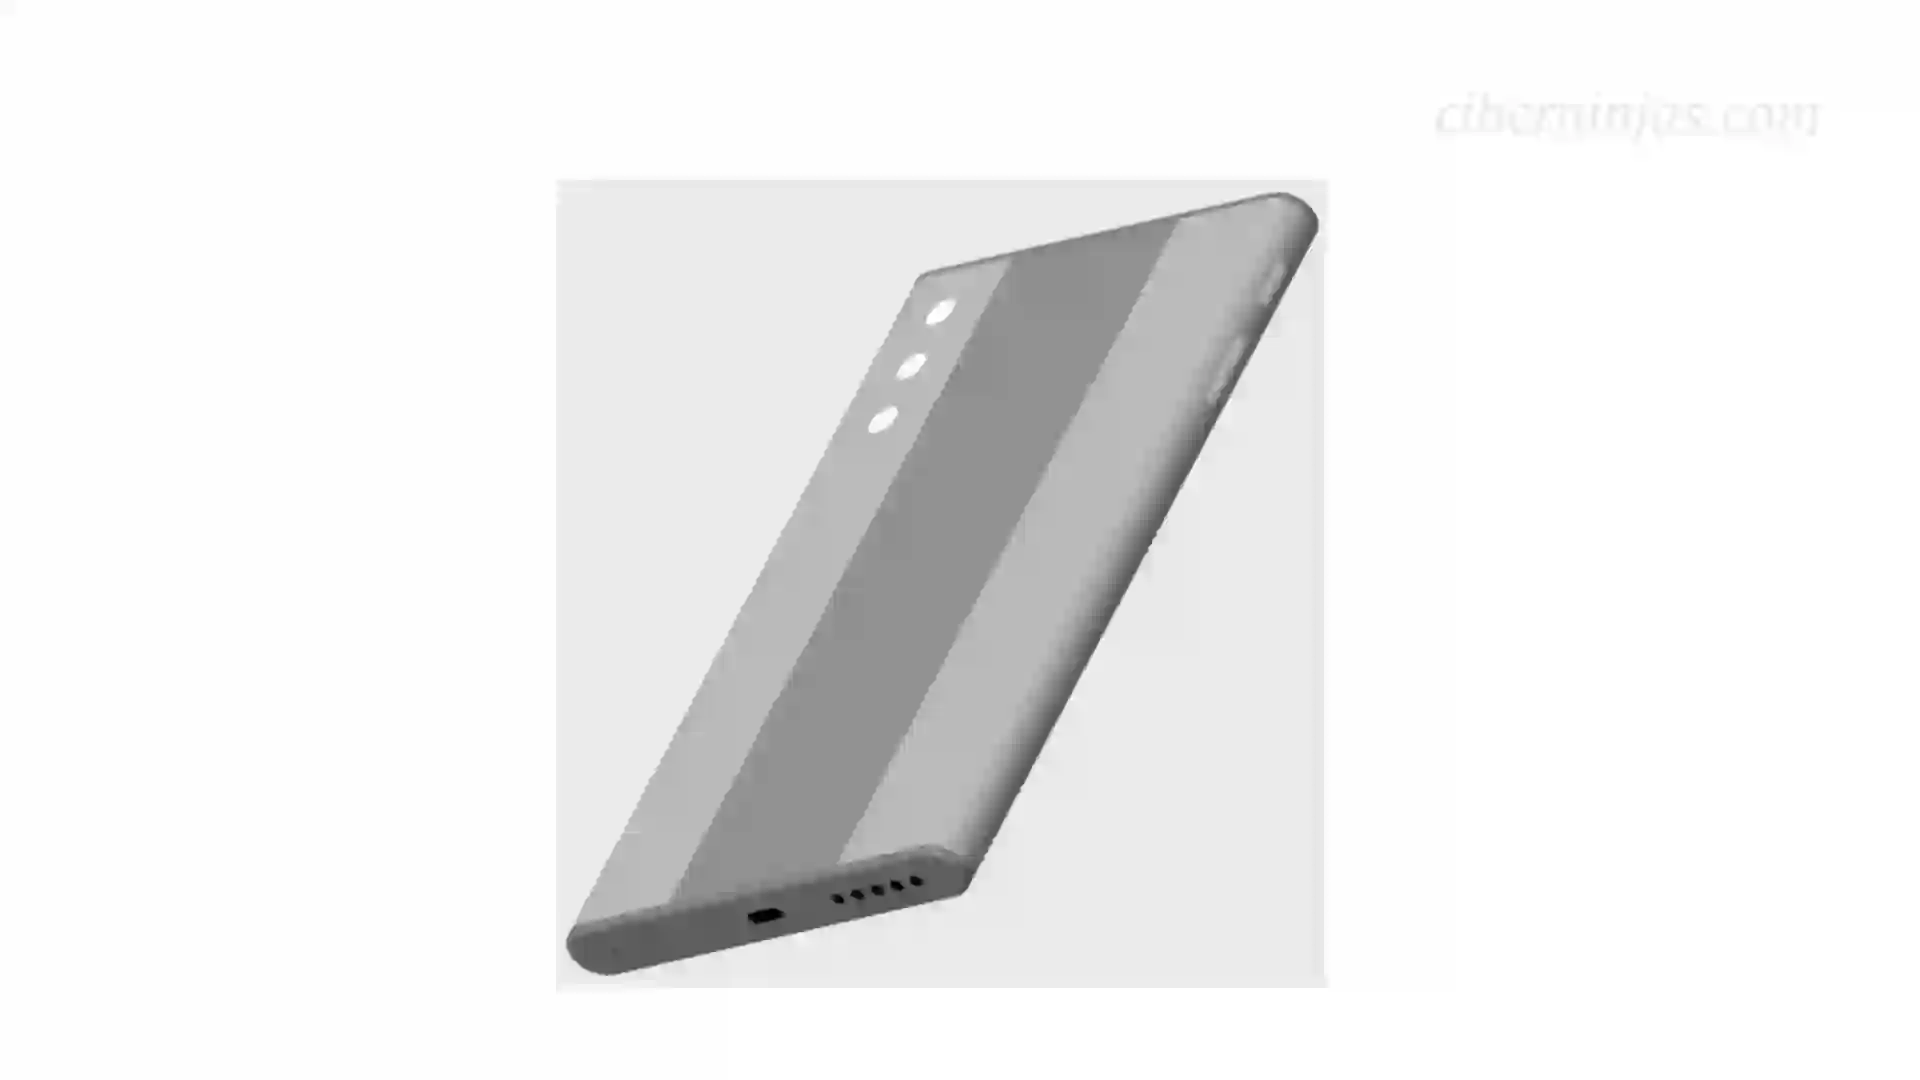 Imagen de diseño del Mix Alpha 2 extraida de la nueva patente de Xiaomi